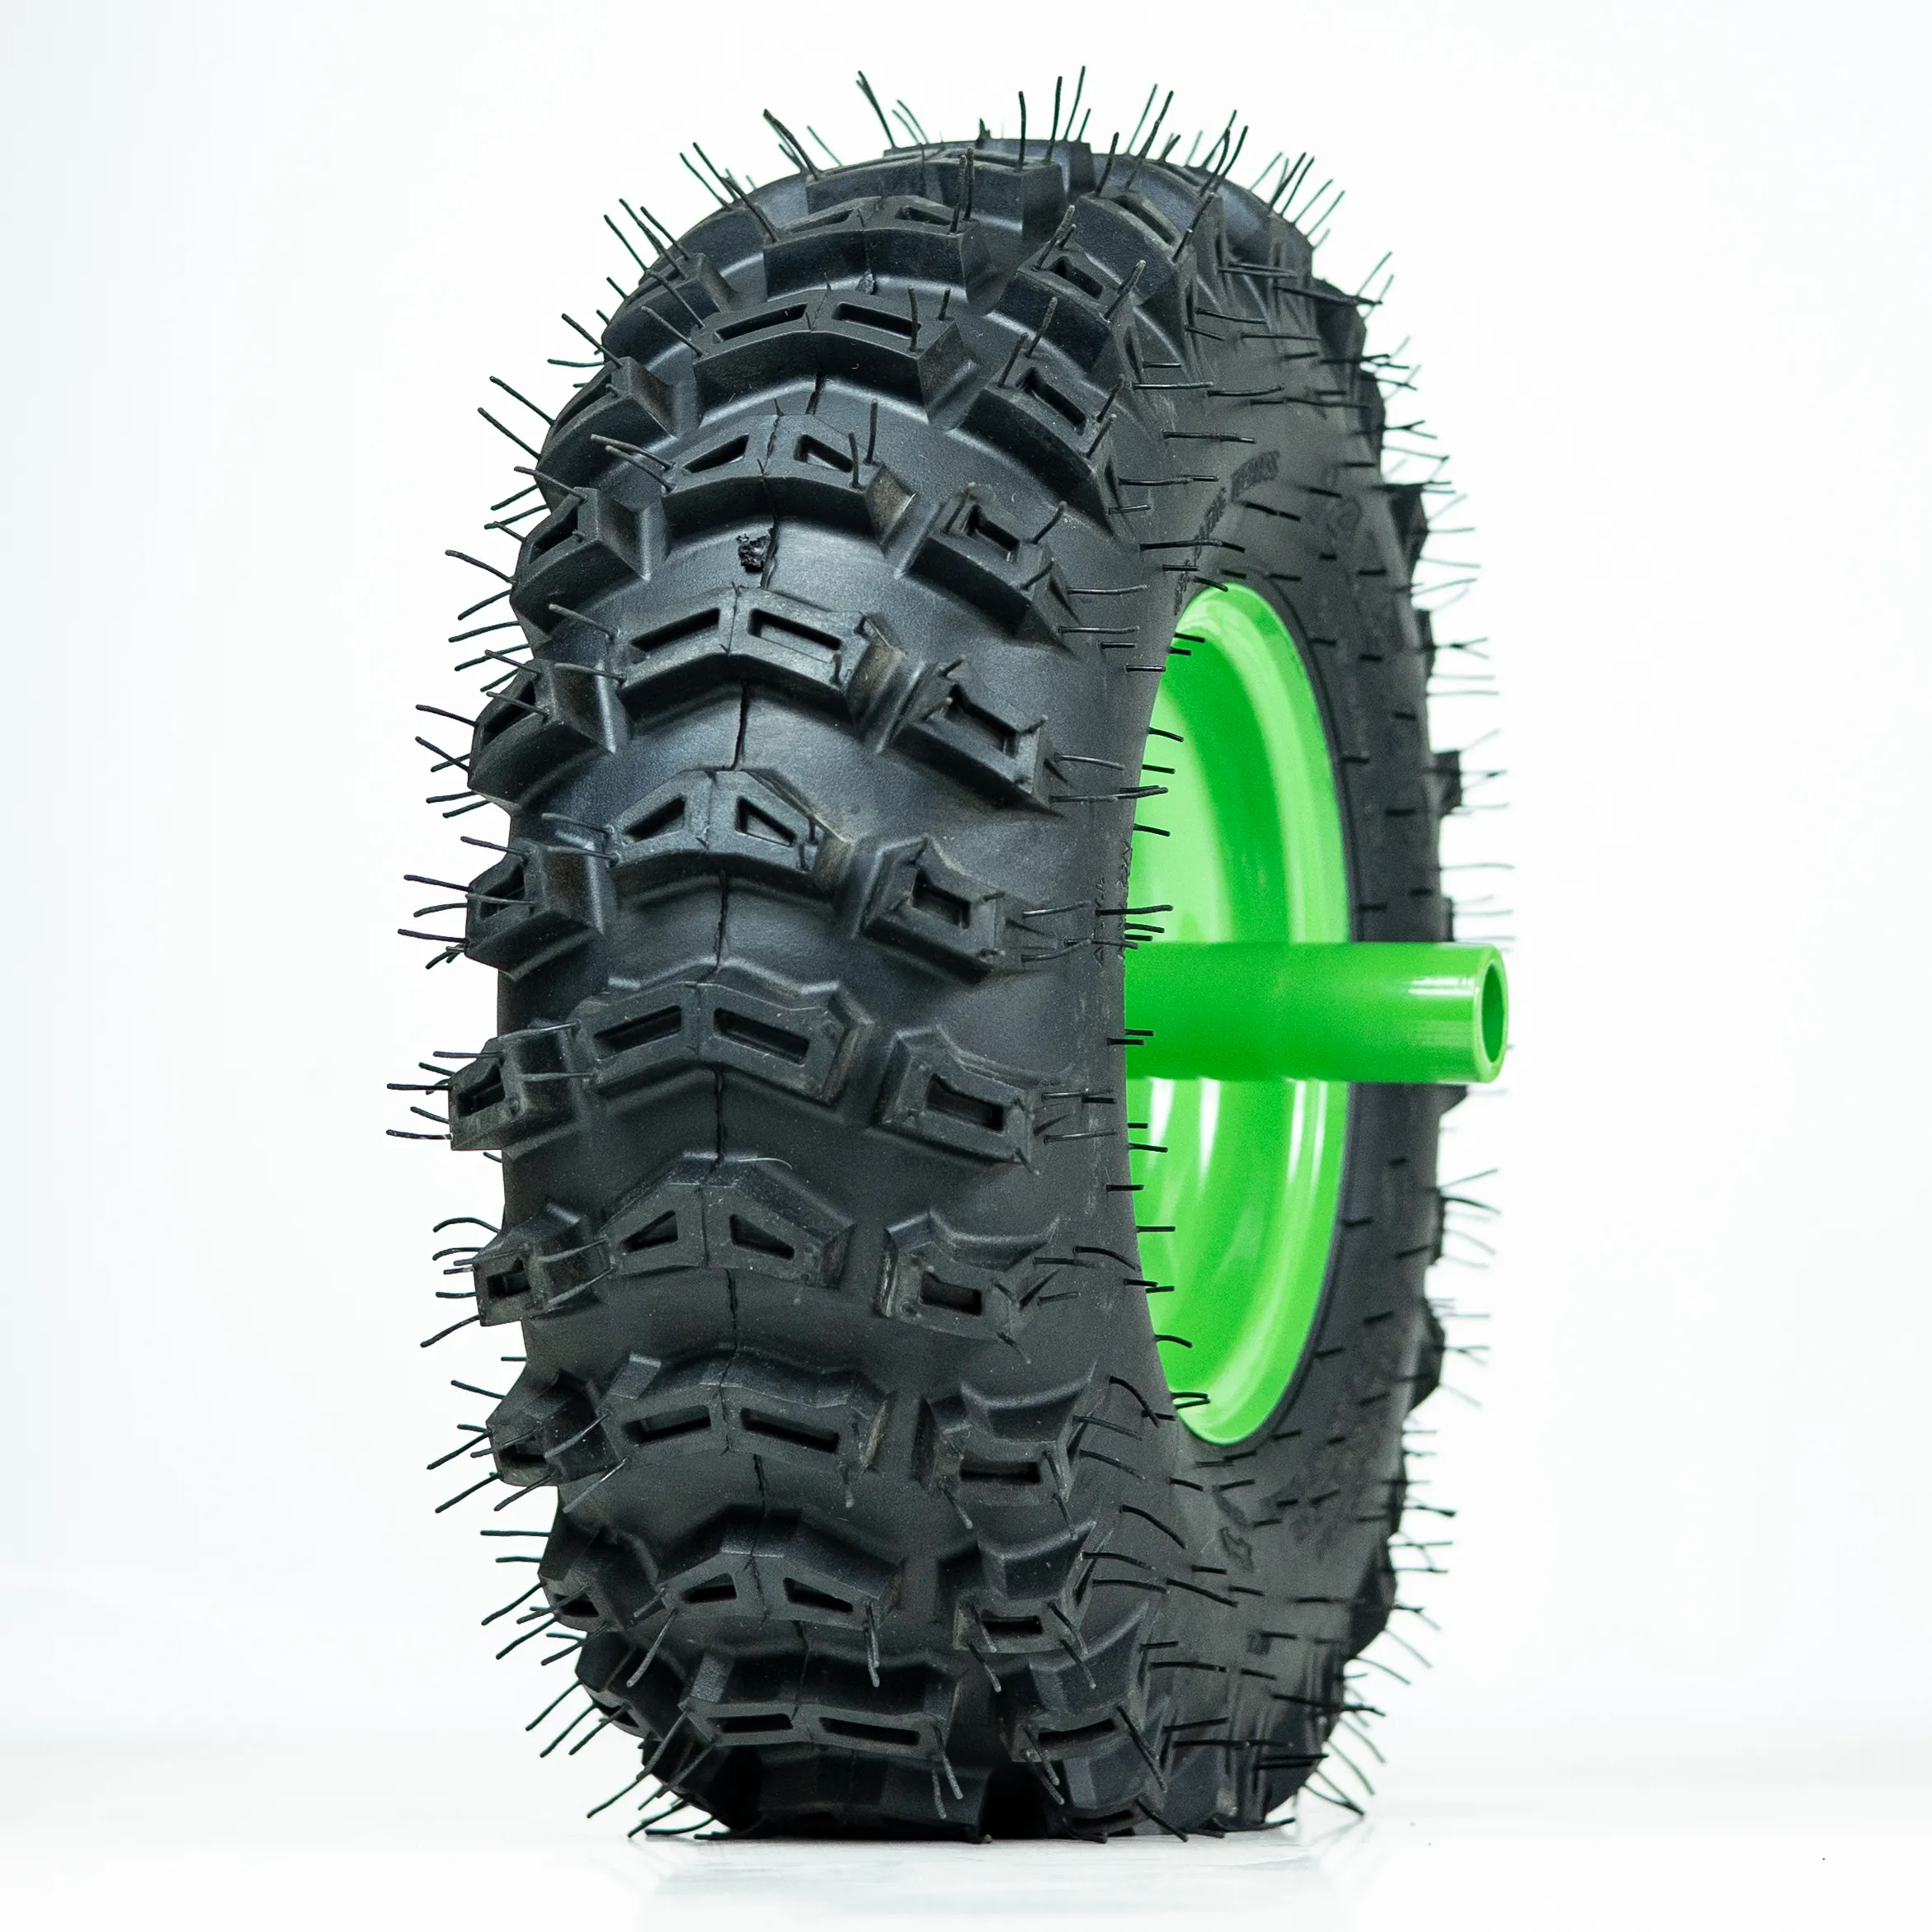 14x5.00-6 pneumatici ATV migliore qualità made in cina prezzo economico go-cart pneumatico